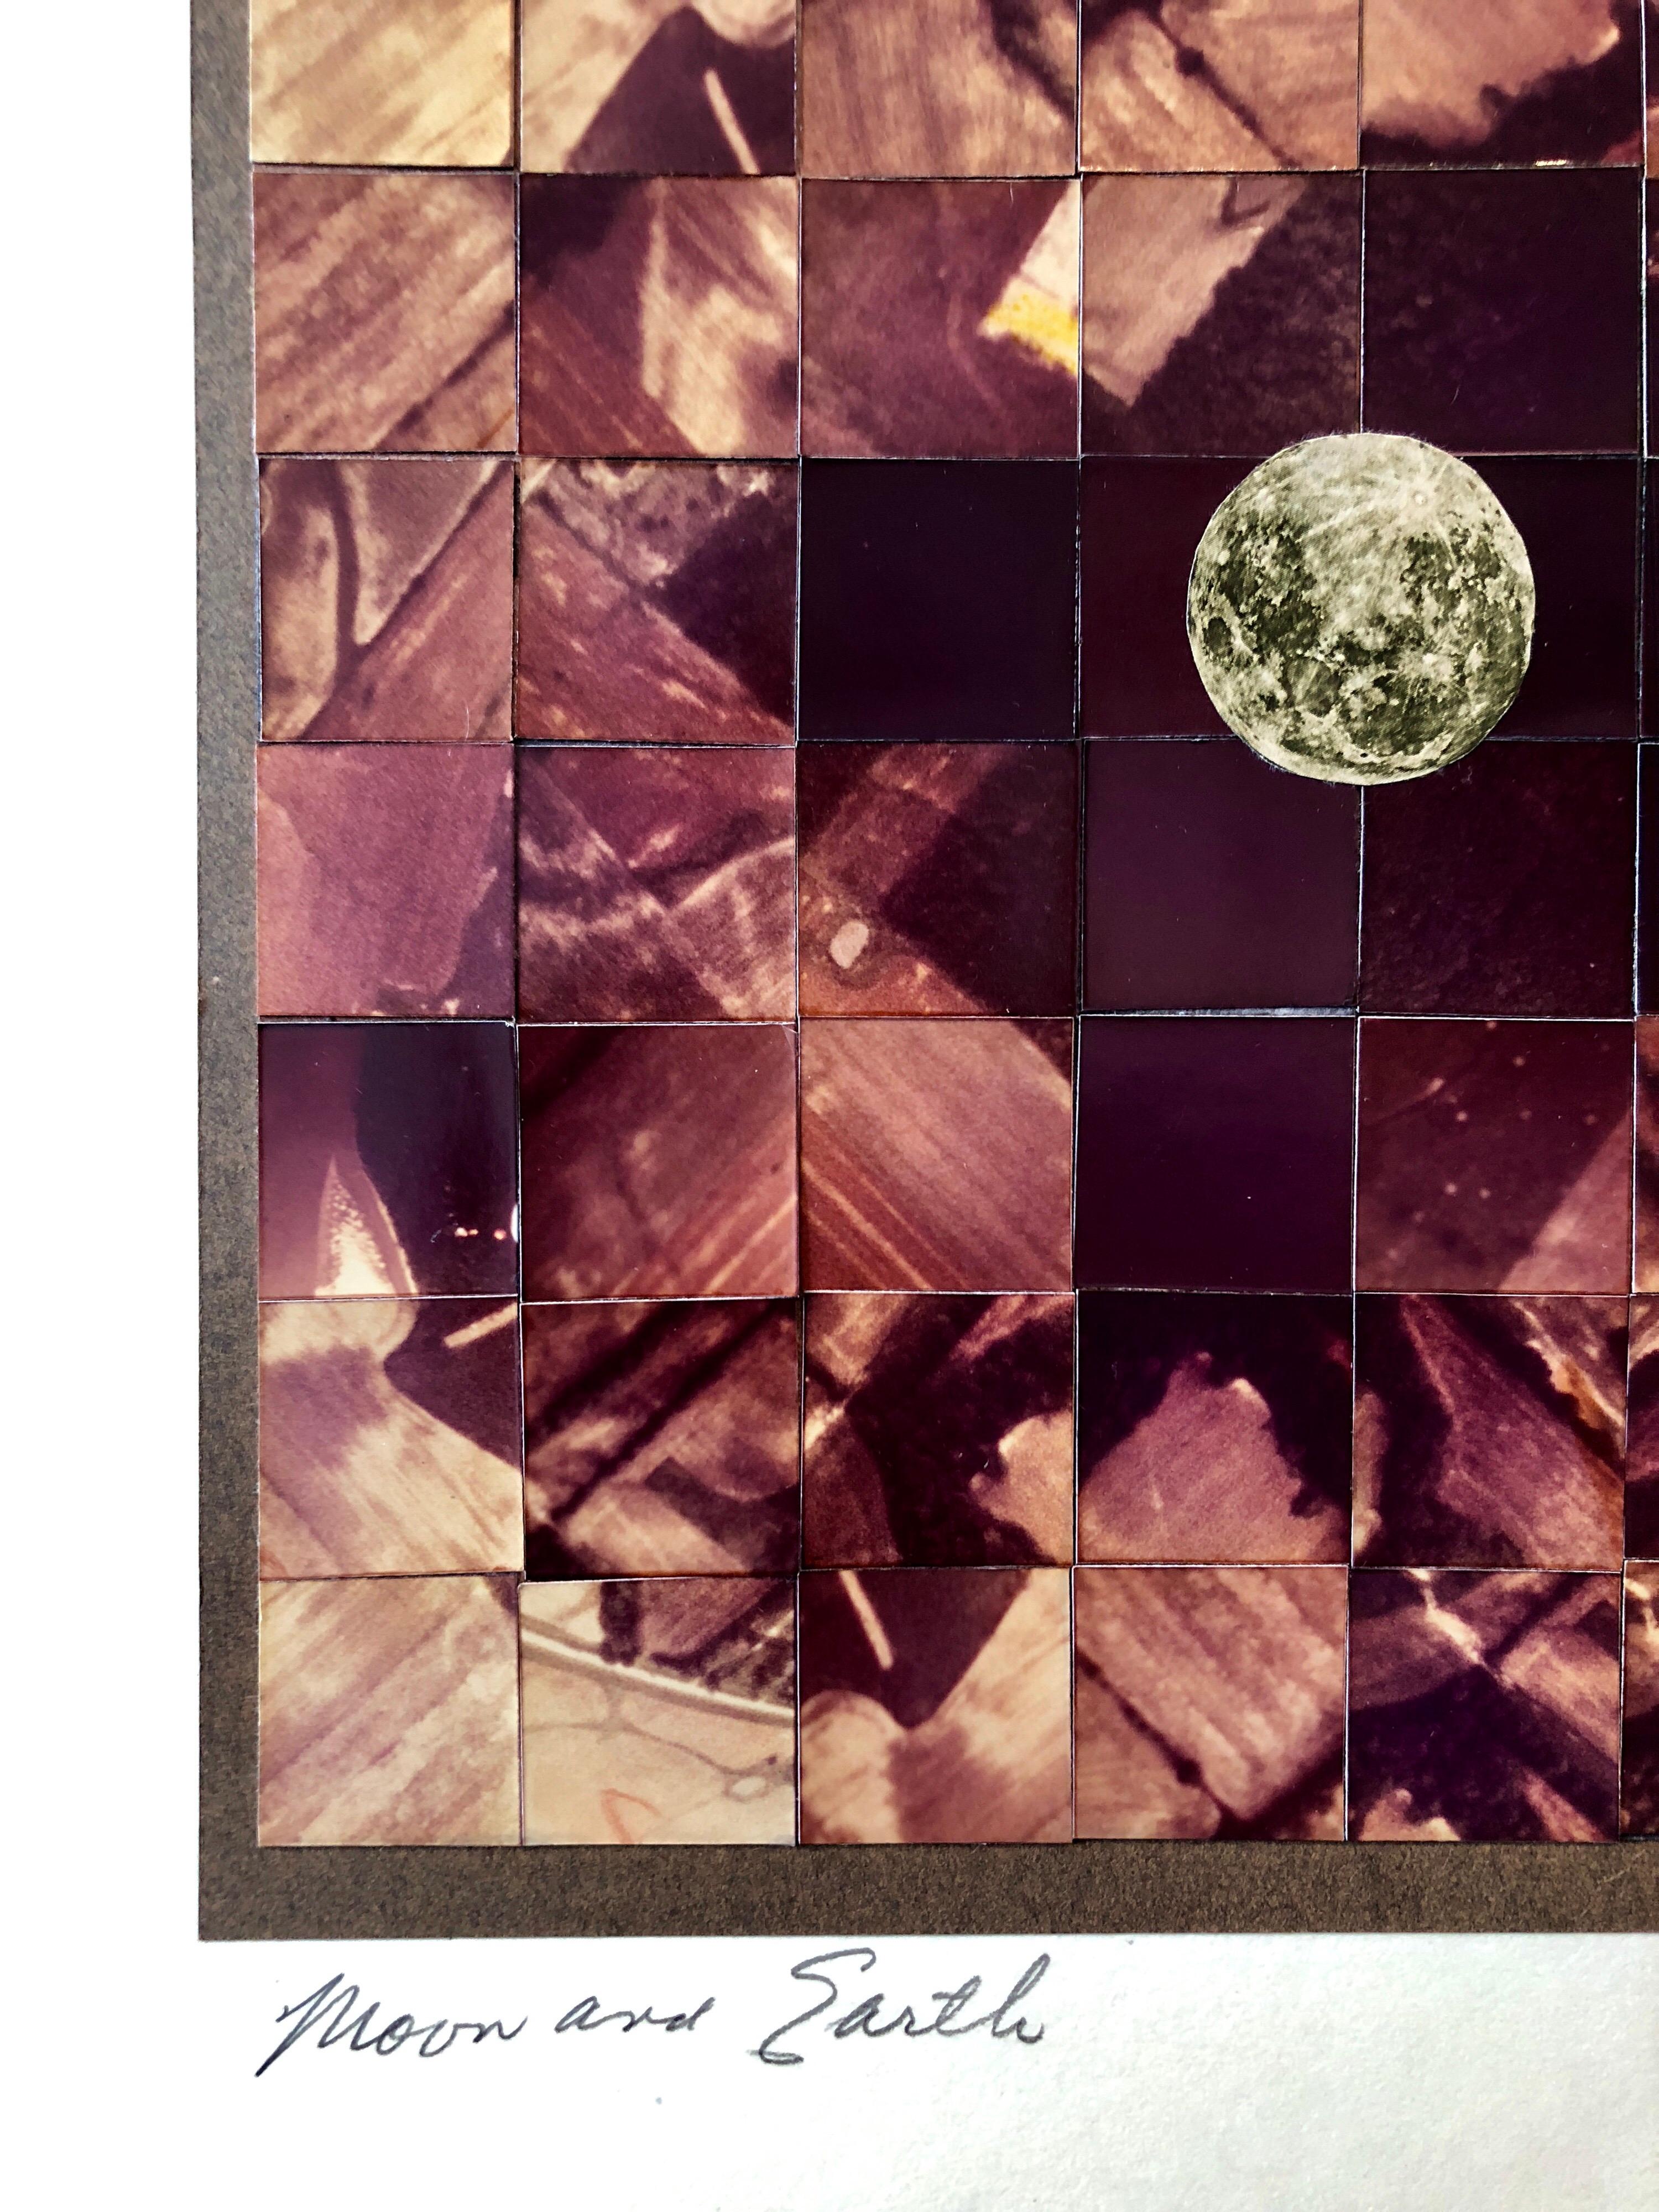 Celle-ci représente des photos spatiales fragmentées et s'intitule Lune et Terre. Elle représente une vue de l'espace.

SIMONS, Vera (1920 - 2012)
Vera Artistics était une pionnière germano-américaine de l'aviation, une aéronaute et une artiste du